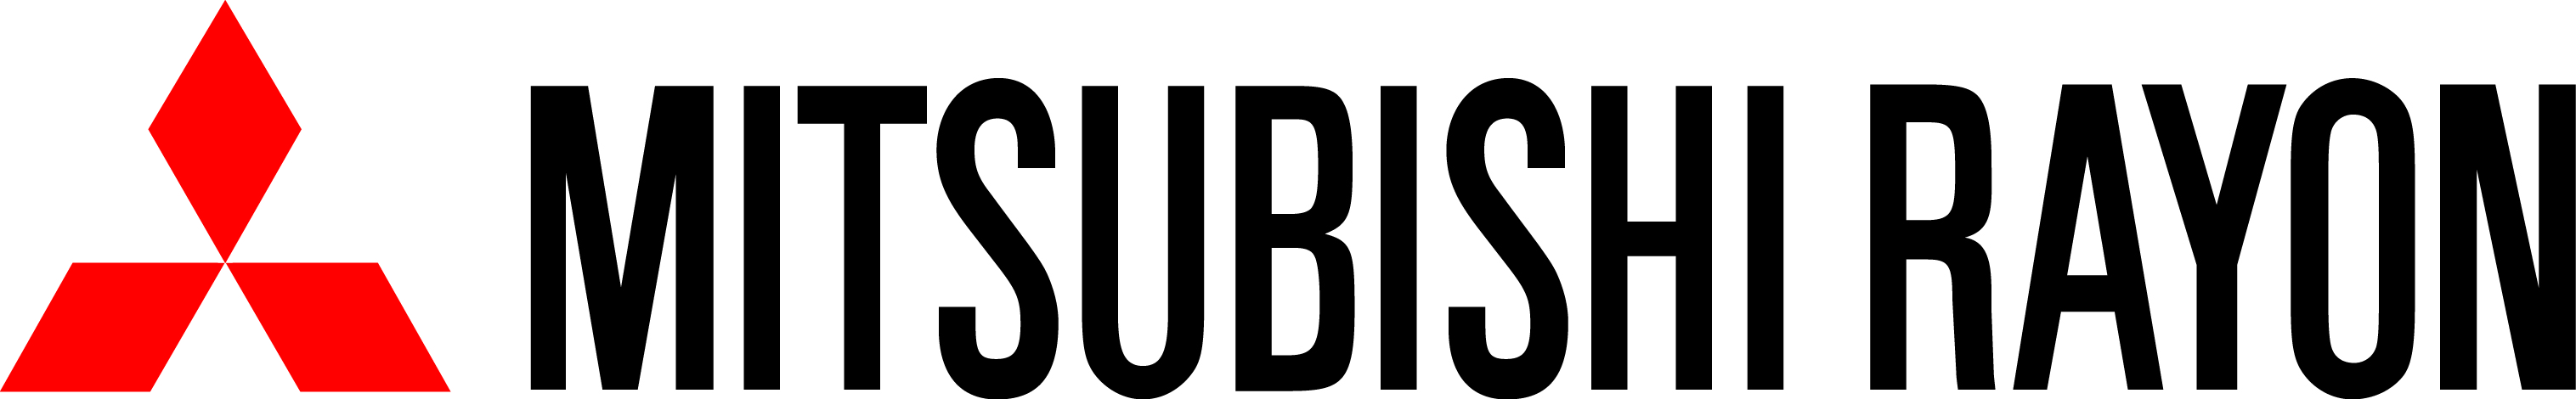 mitsubishi rayon logo